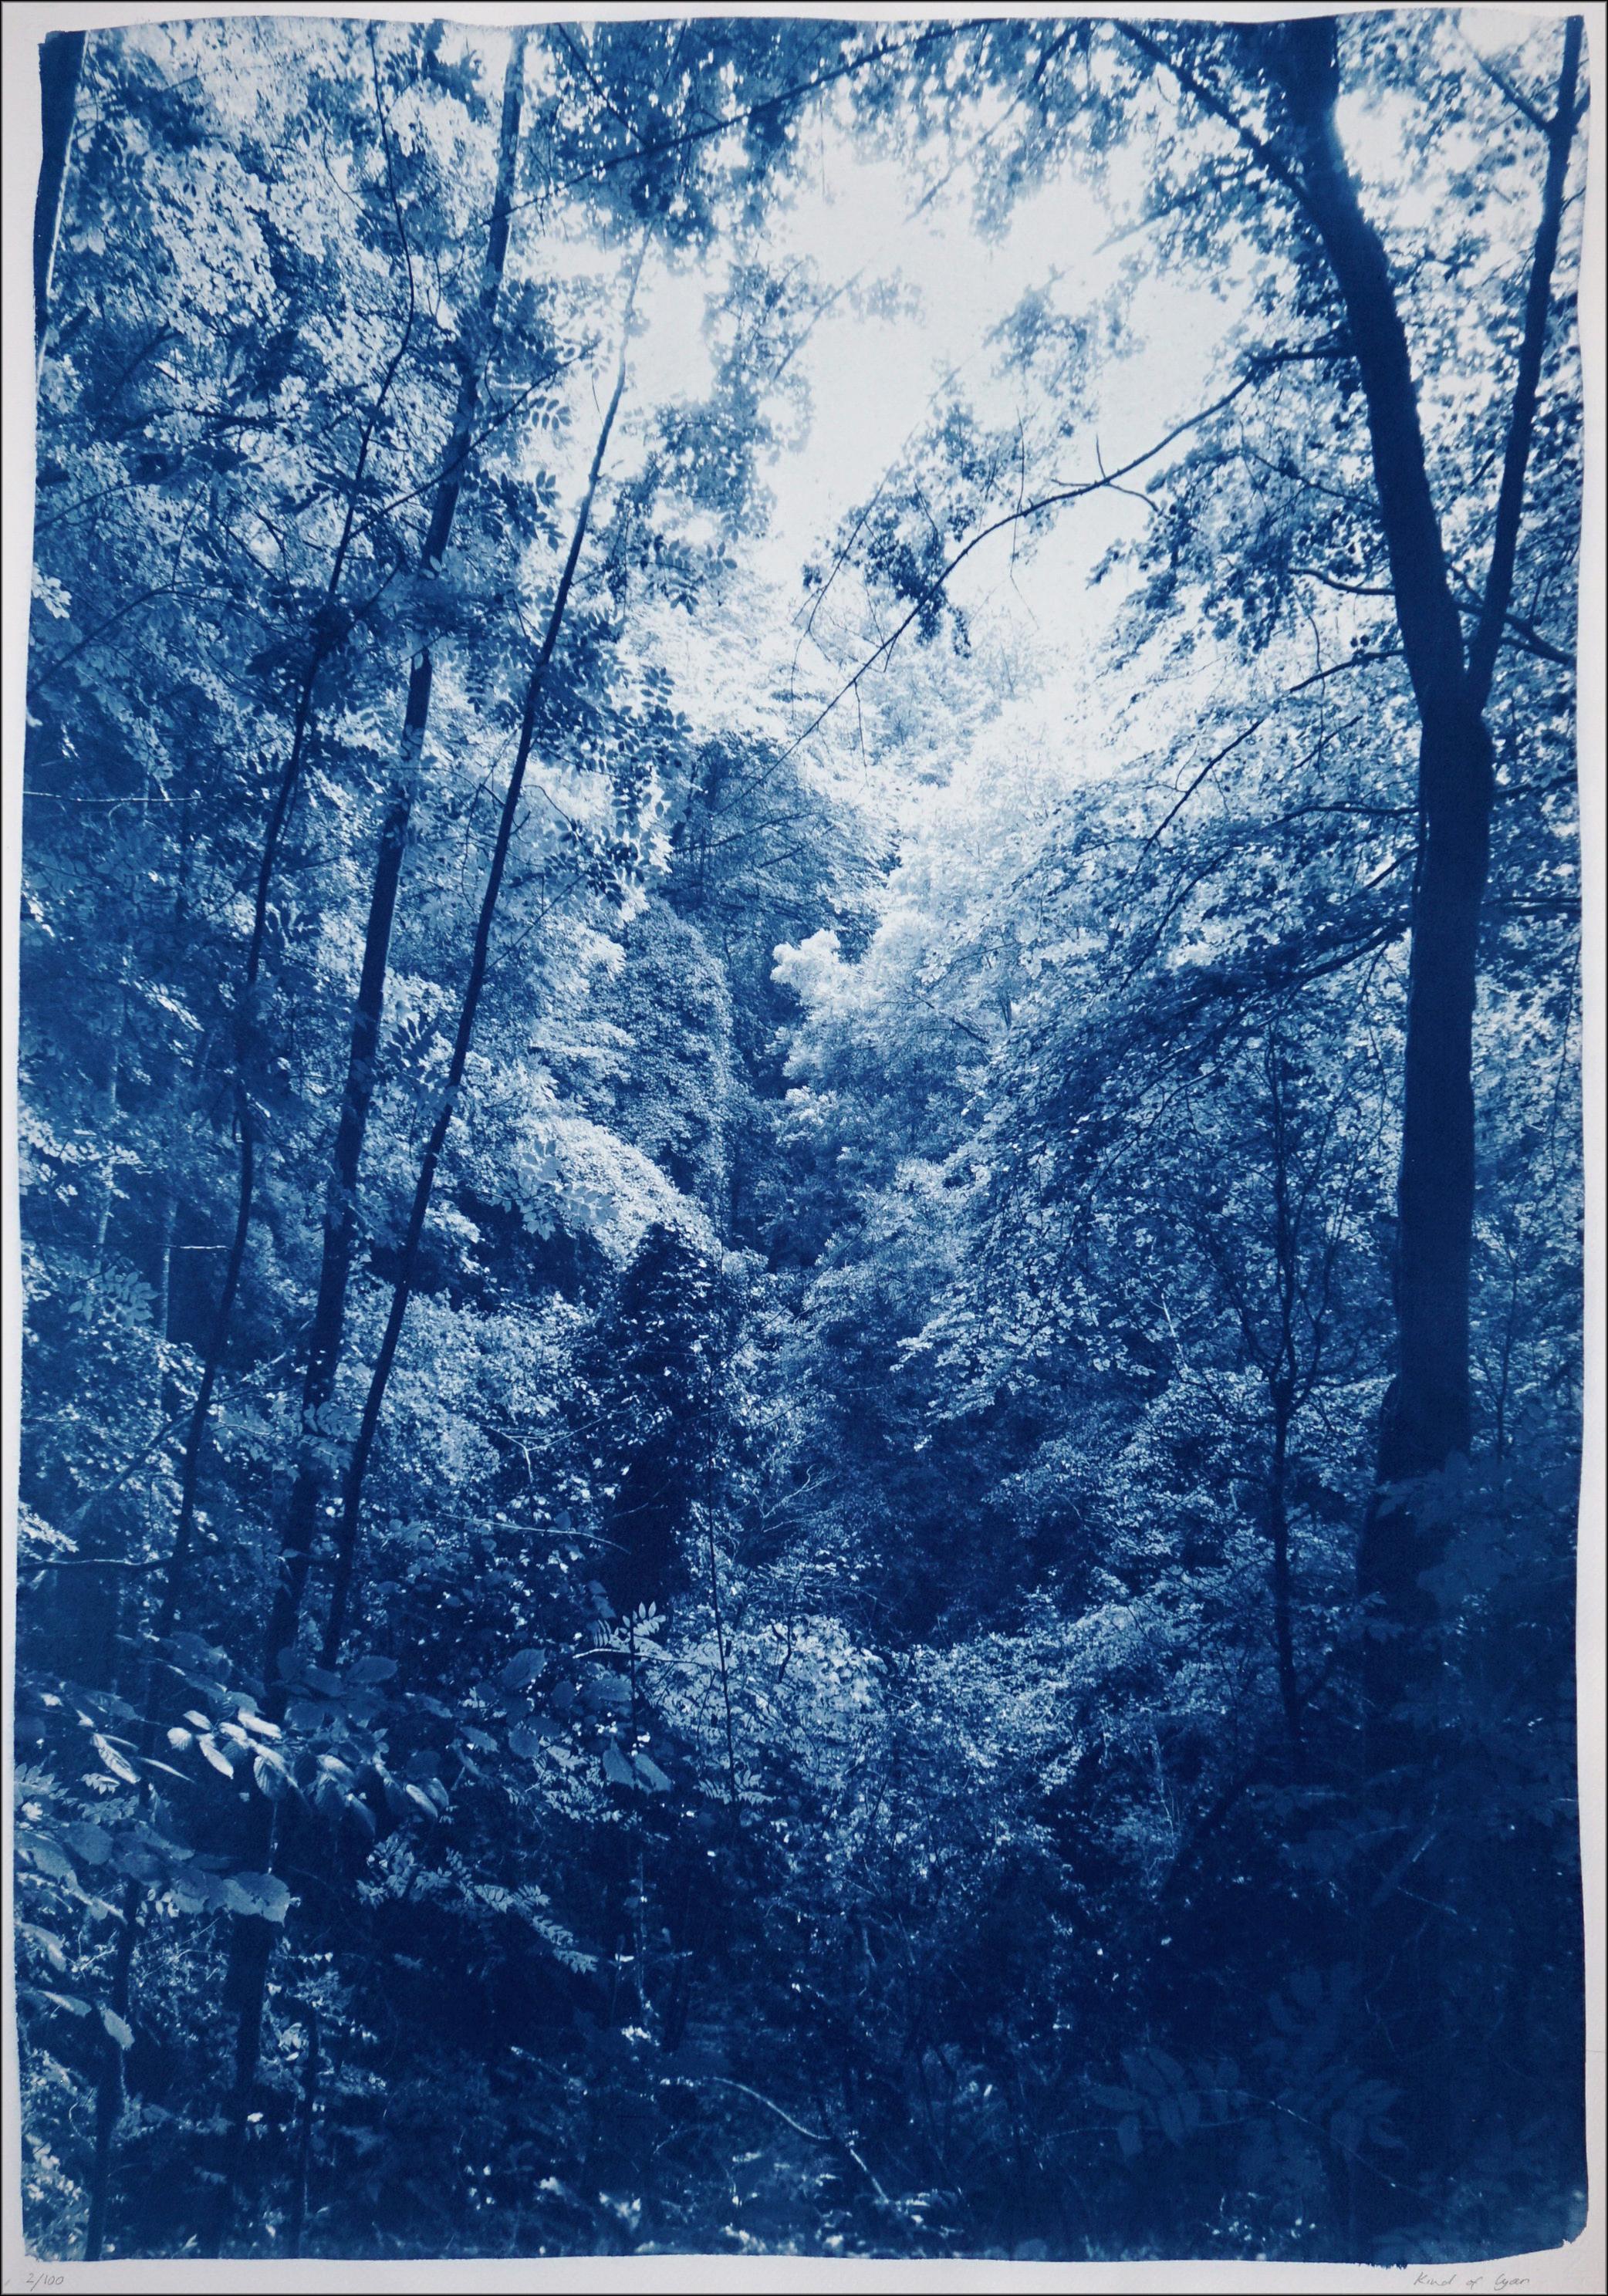 Légère lumière dans les bois, paysage forestier, tons bleus, impression cyanotype faite à la main